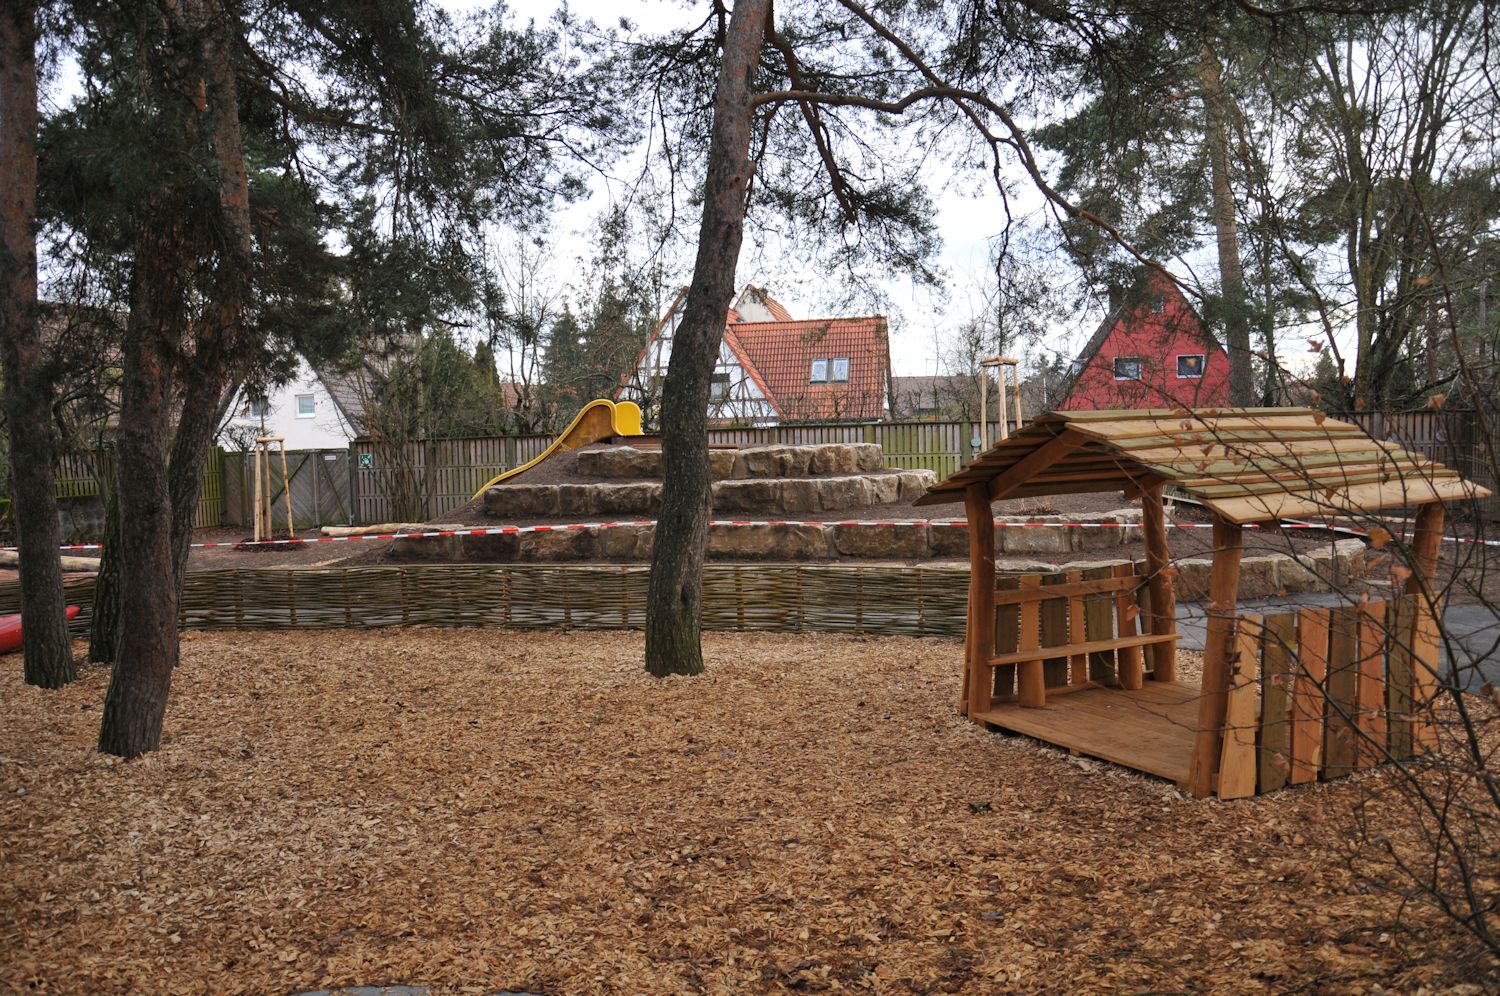 Kindergarten Außenanlage